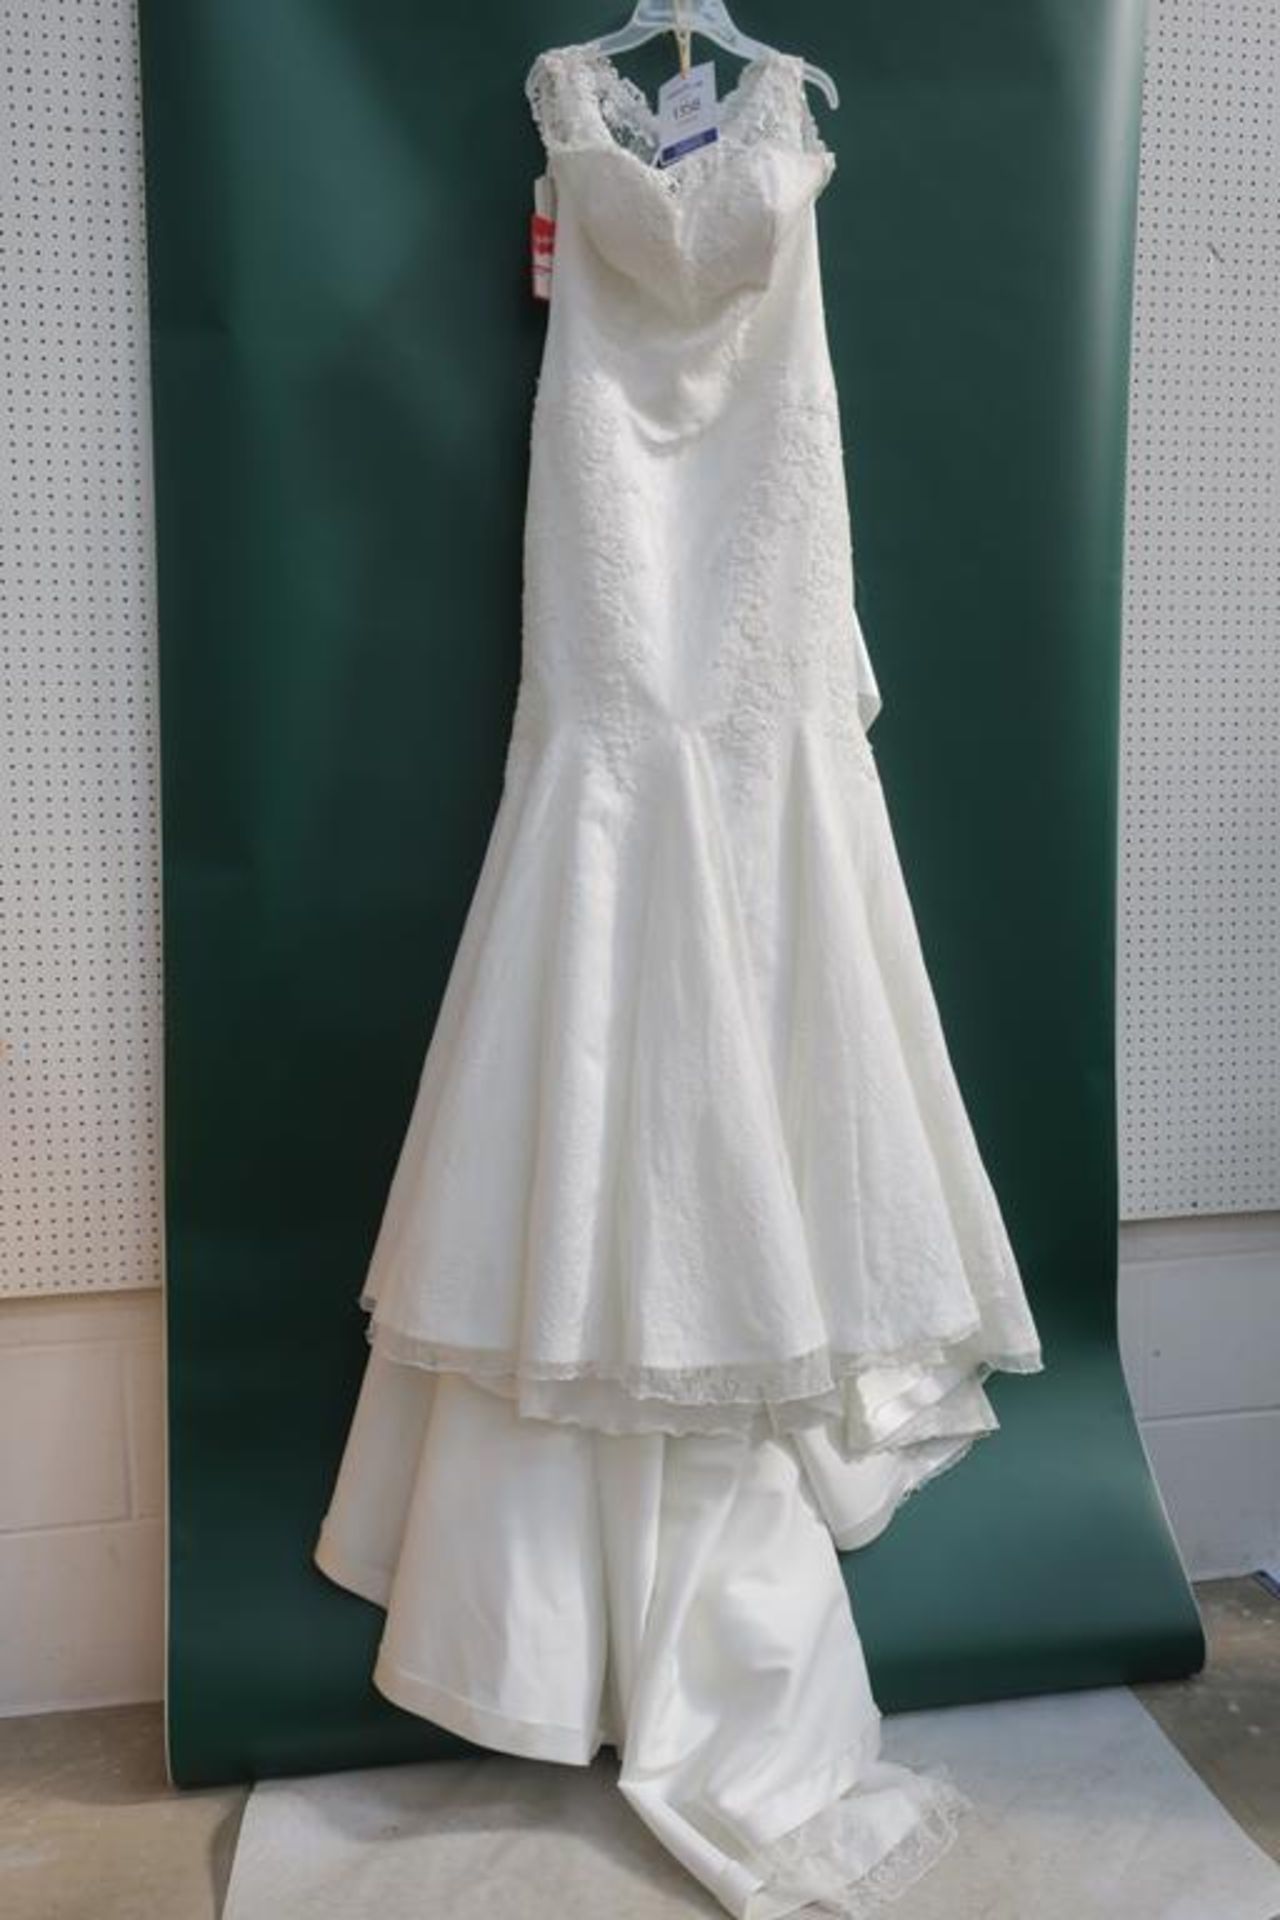 * Oronovias Fabricado En España Wedding Dress UK Size 14 (RRP £1500)